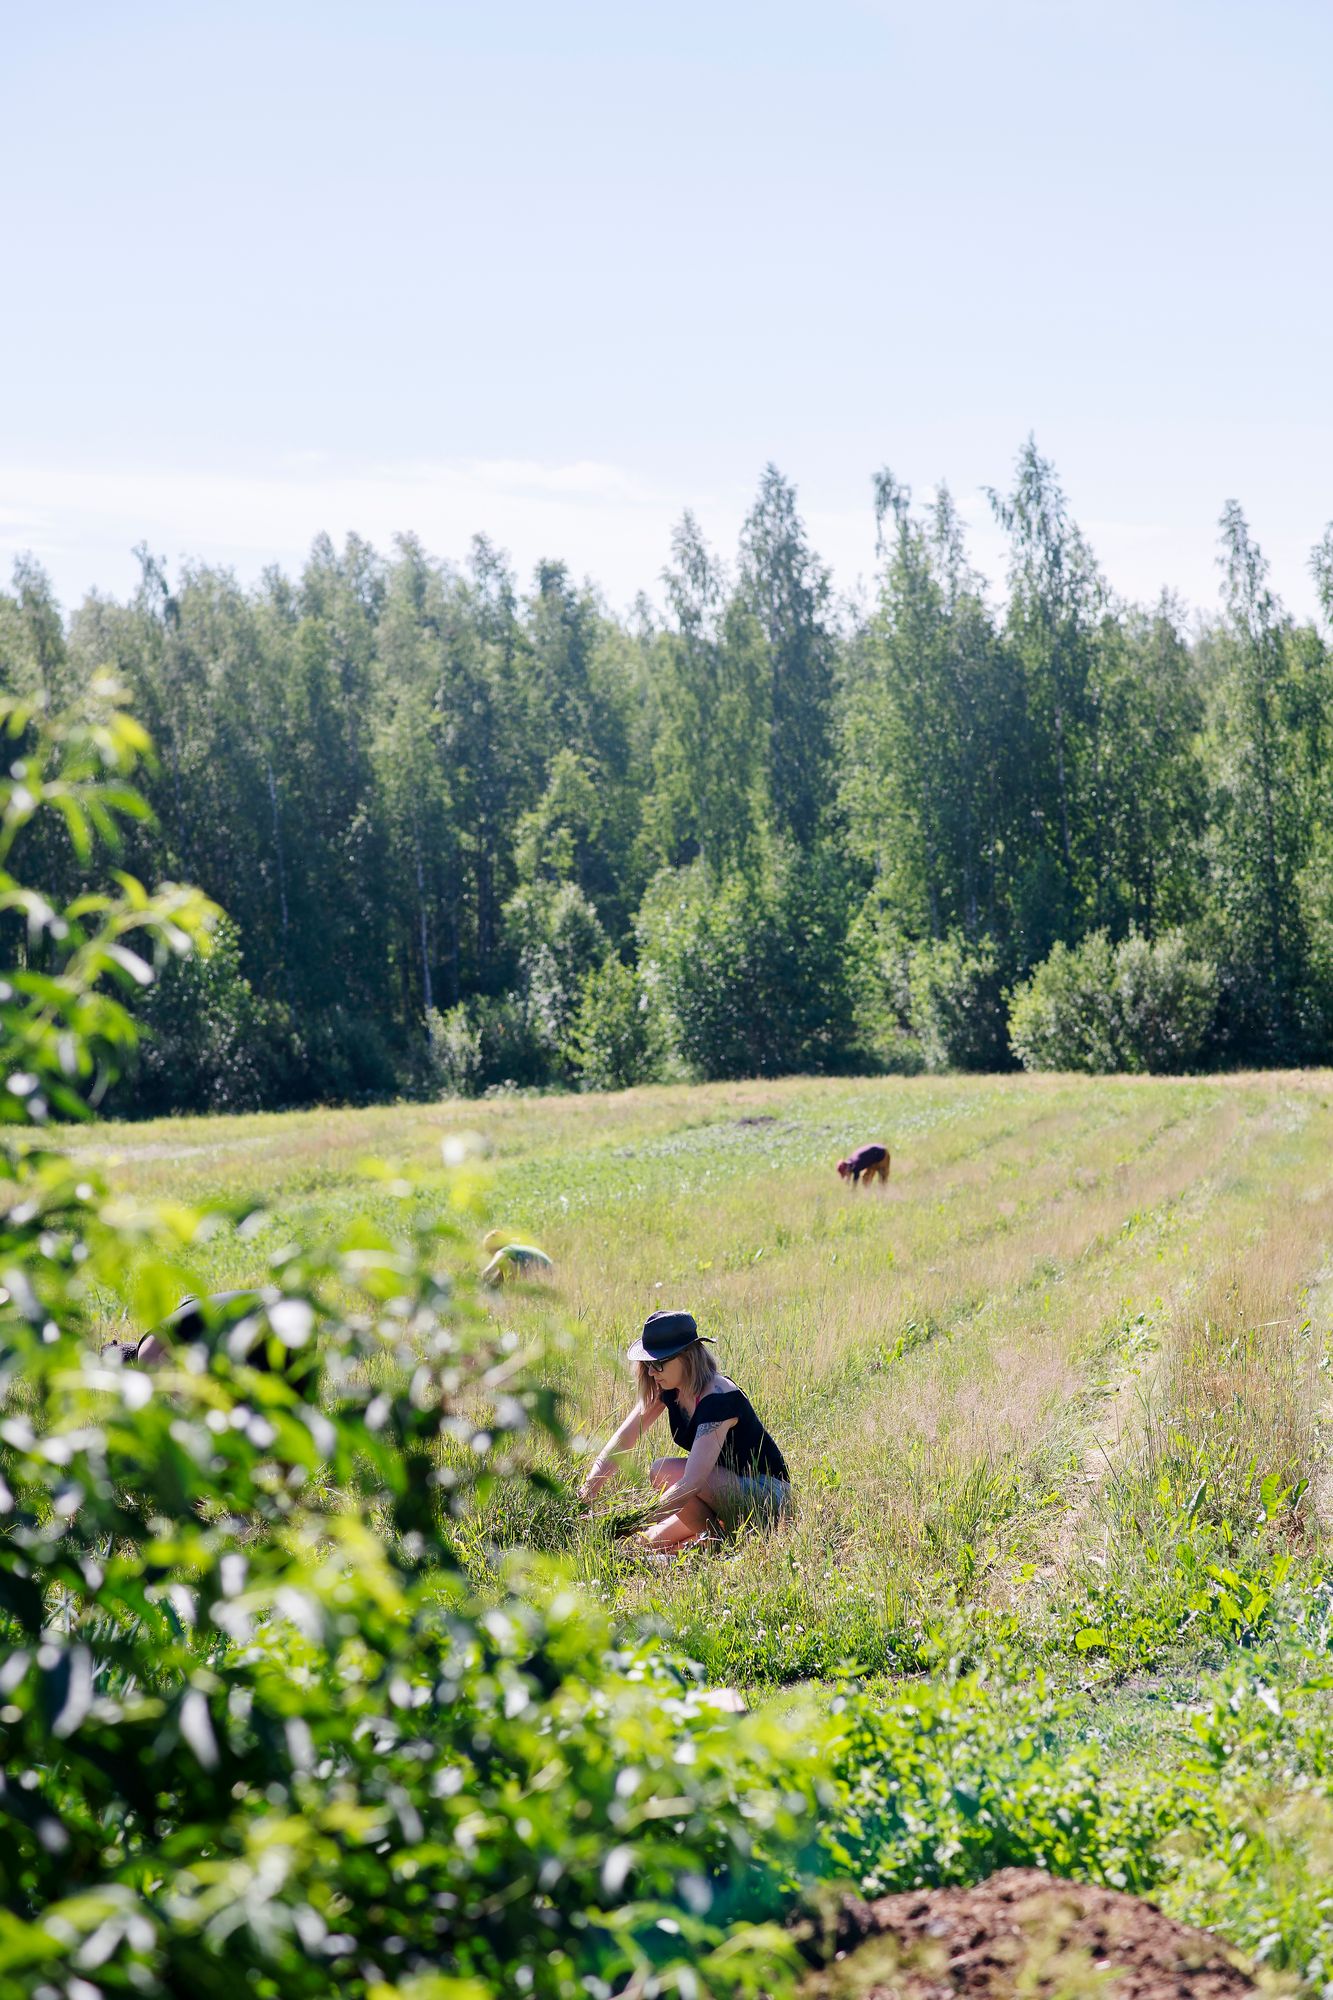 Kumppanuusviljelijä liittyy pellon osakkaaksi. © Sampo Korhonen